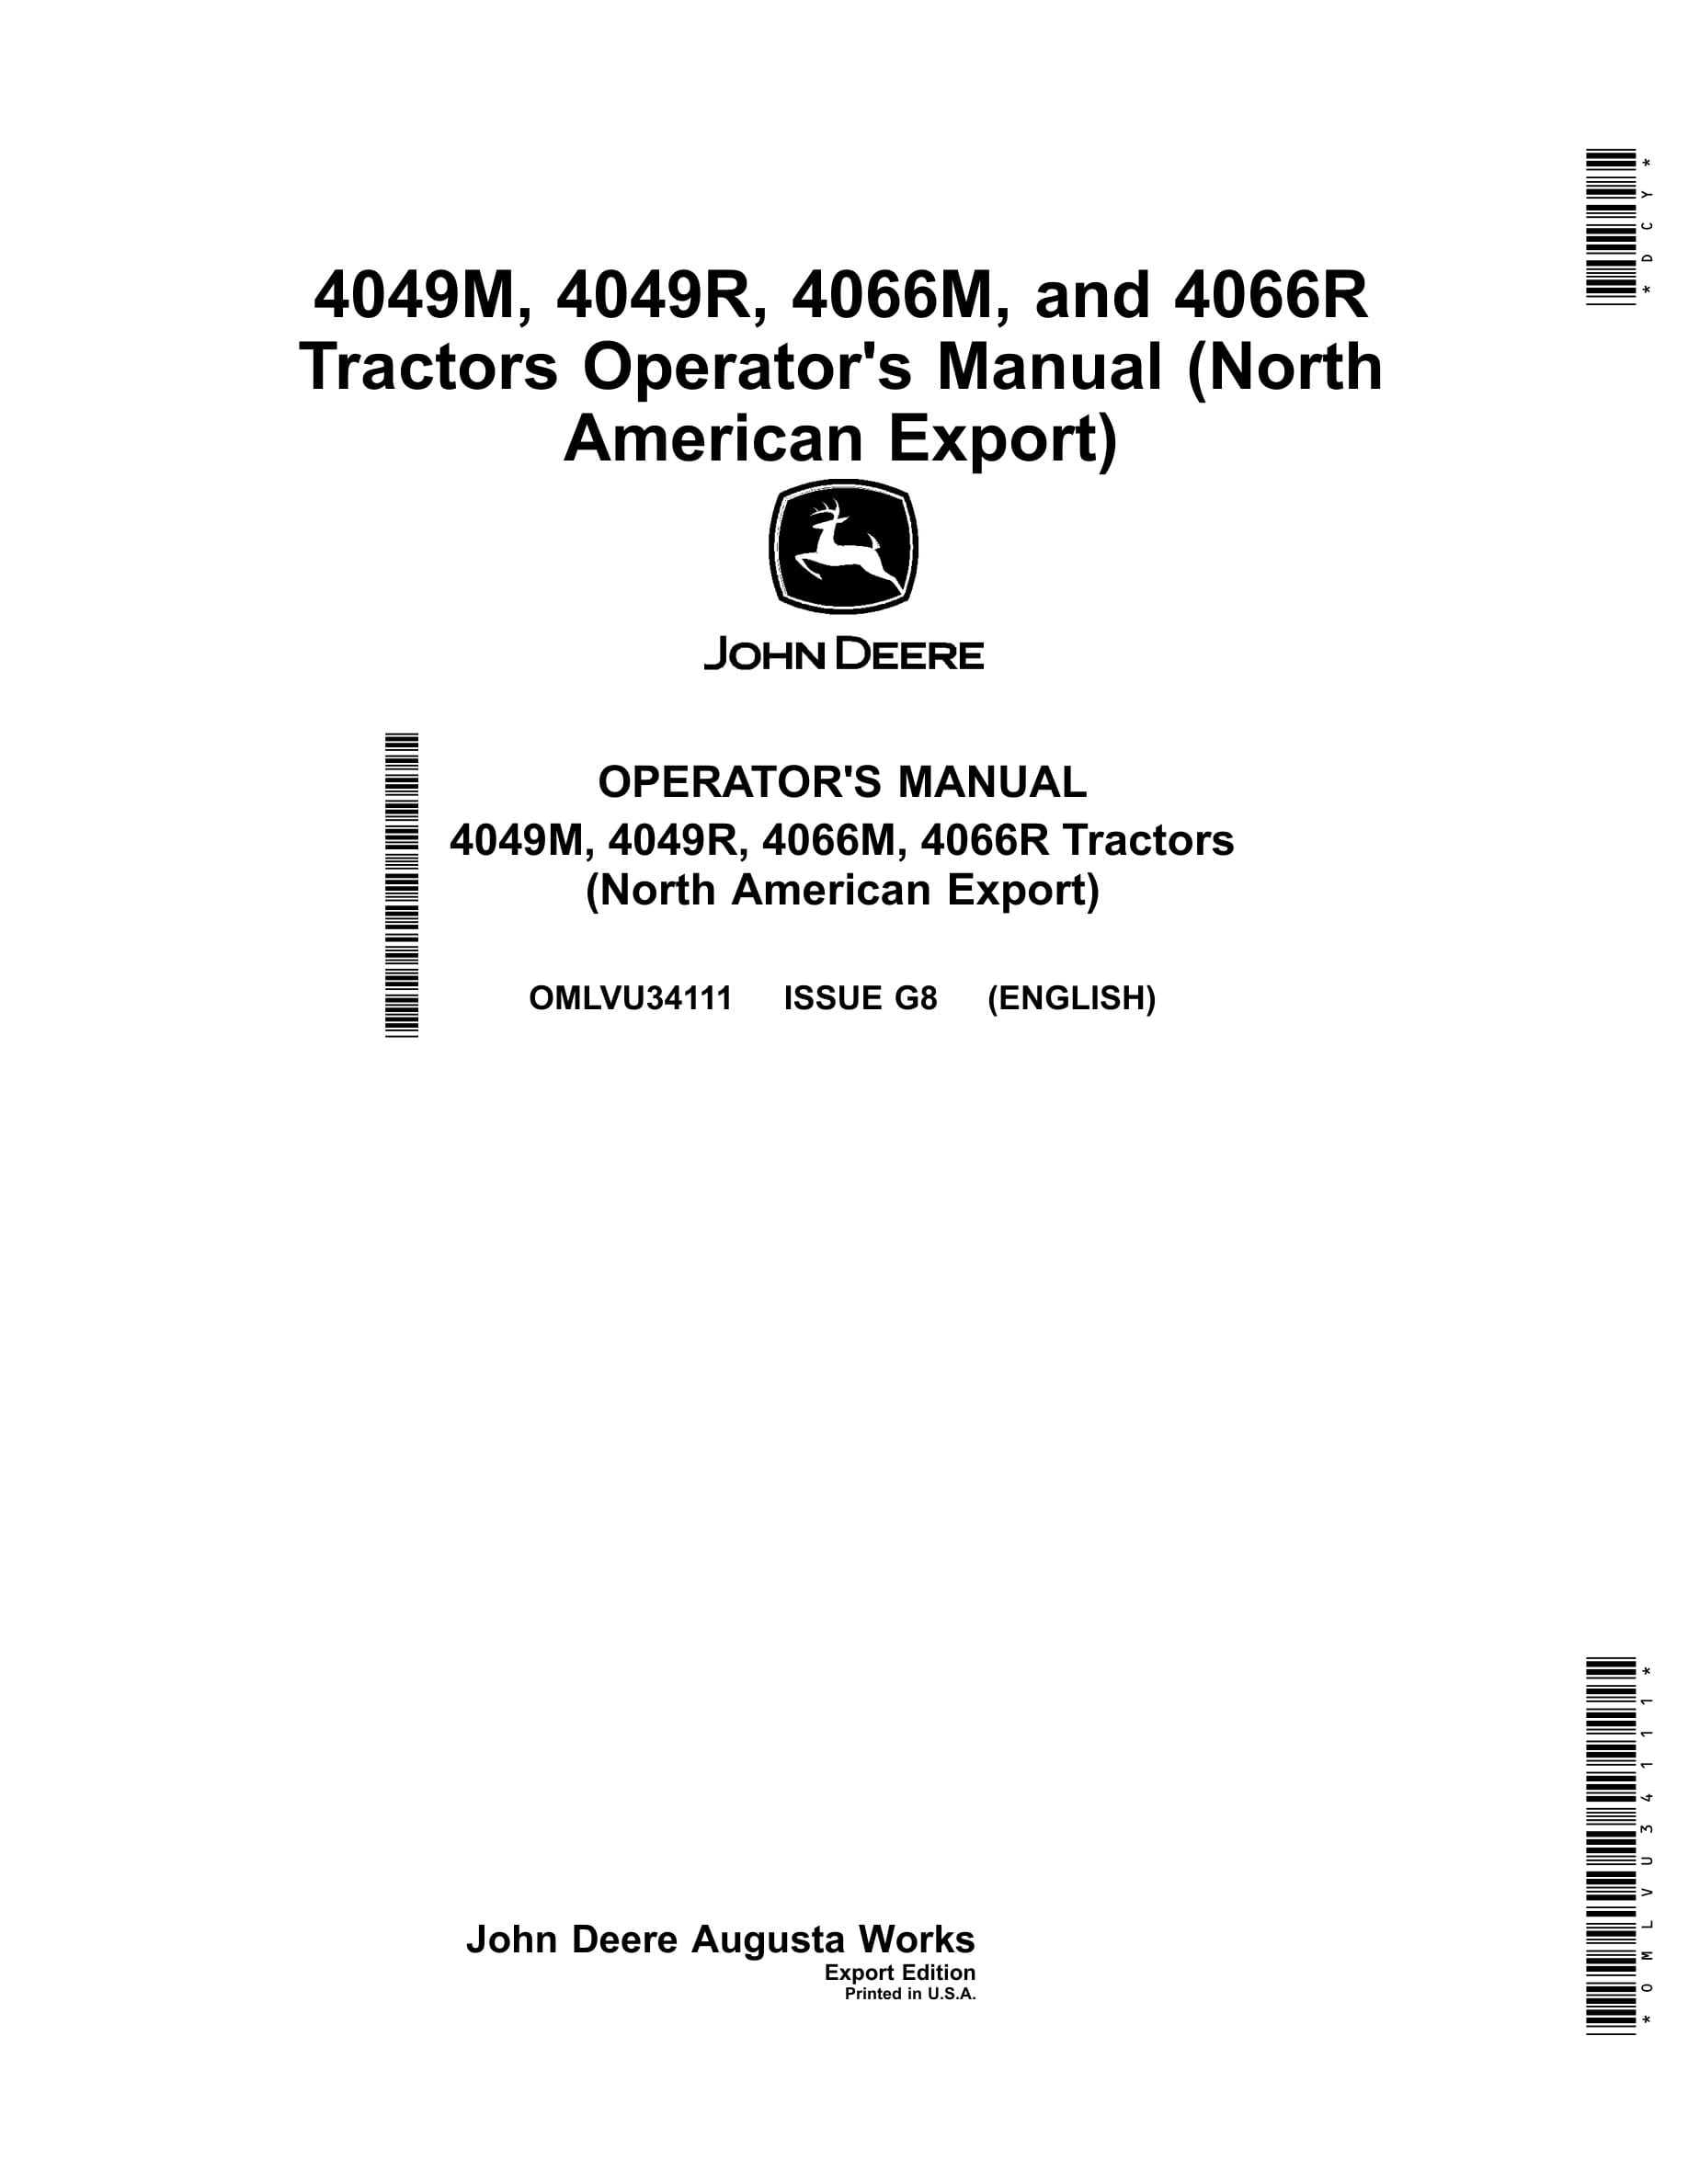 John Deere 4049m, 4049r, 4066m, 4066r Tractors Operator Manuals OMLVU34111-1